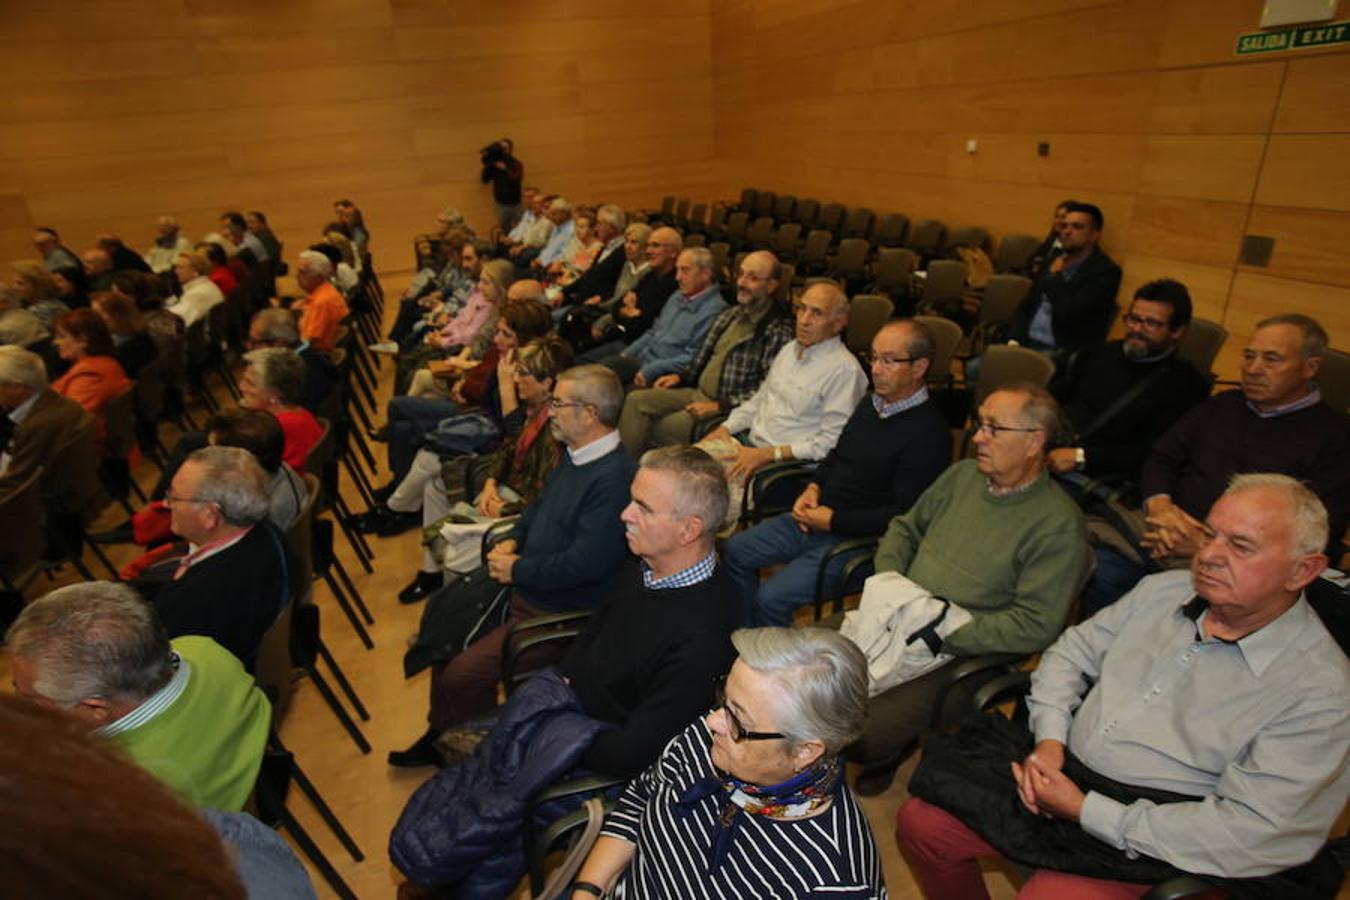 La alcaldesa de Logroño, Cuca Gamarra, y la consejera de Presidencia, Relaciones Institucionales y Acción Exterior, Begoña Martínez Arregui, han participado en Riojafórum en el acto institucional con motivo del 40 aniversario de la Asociación de Pensionistas y Jubilados de La Rioja.